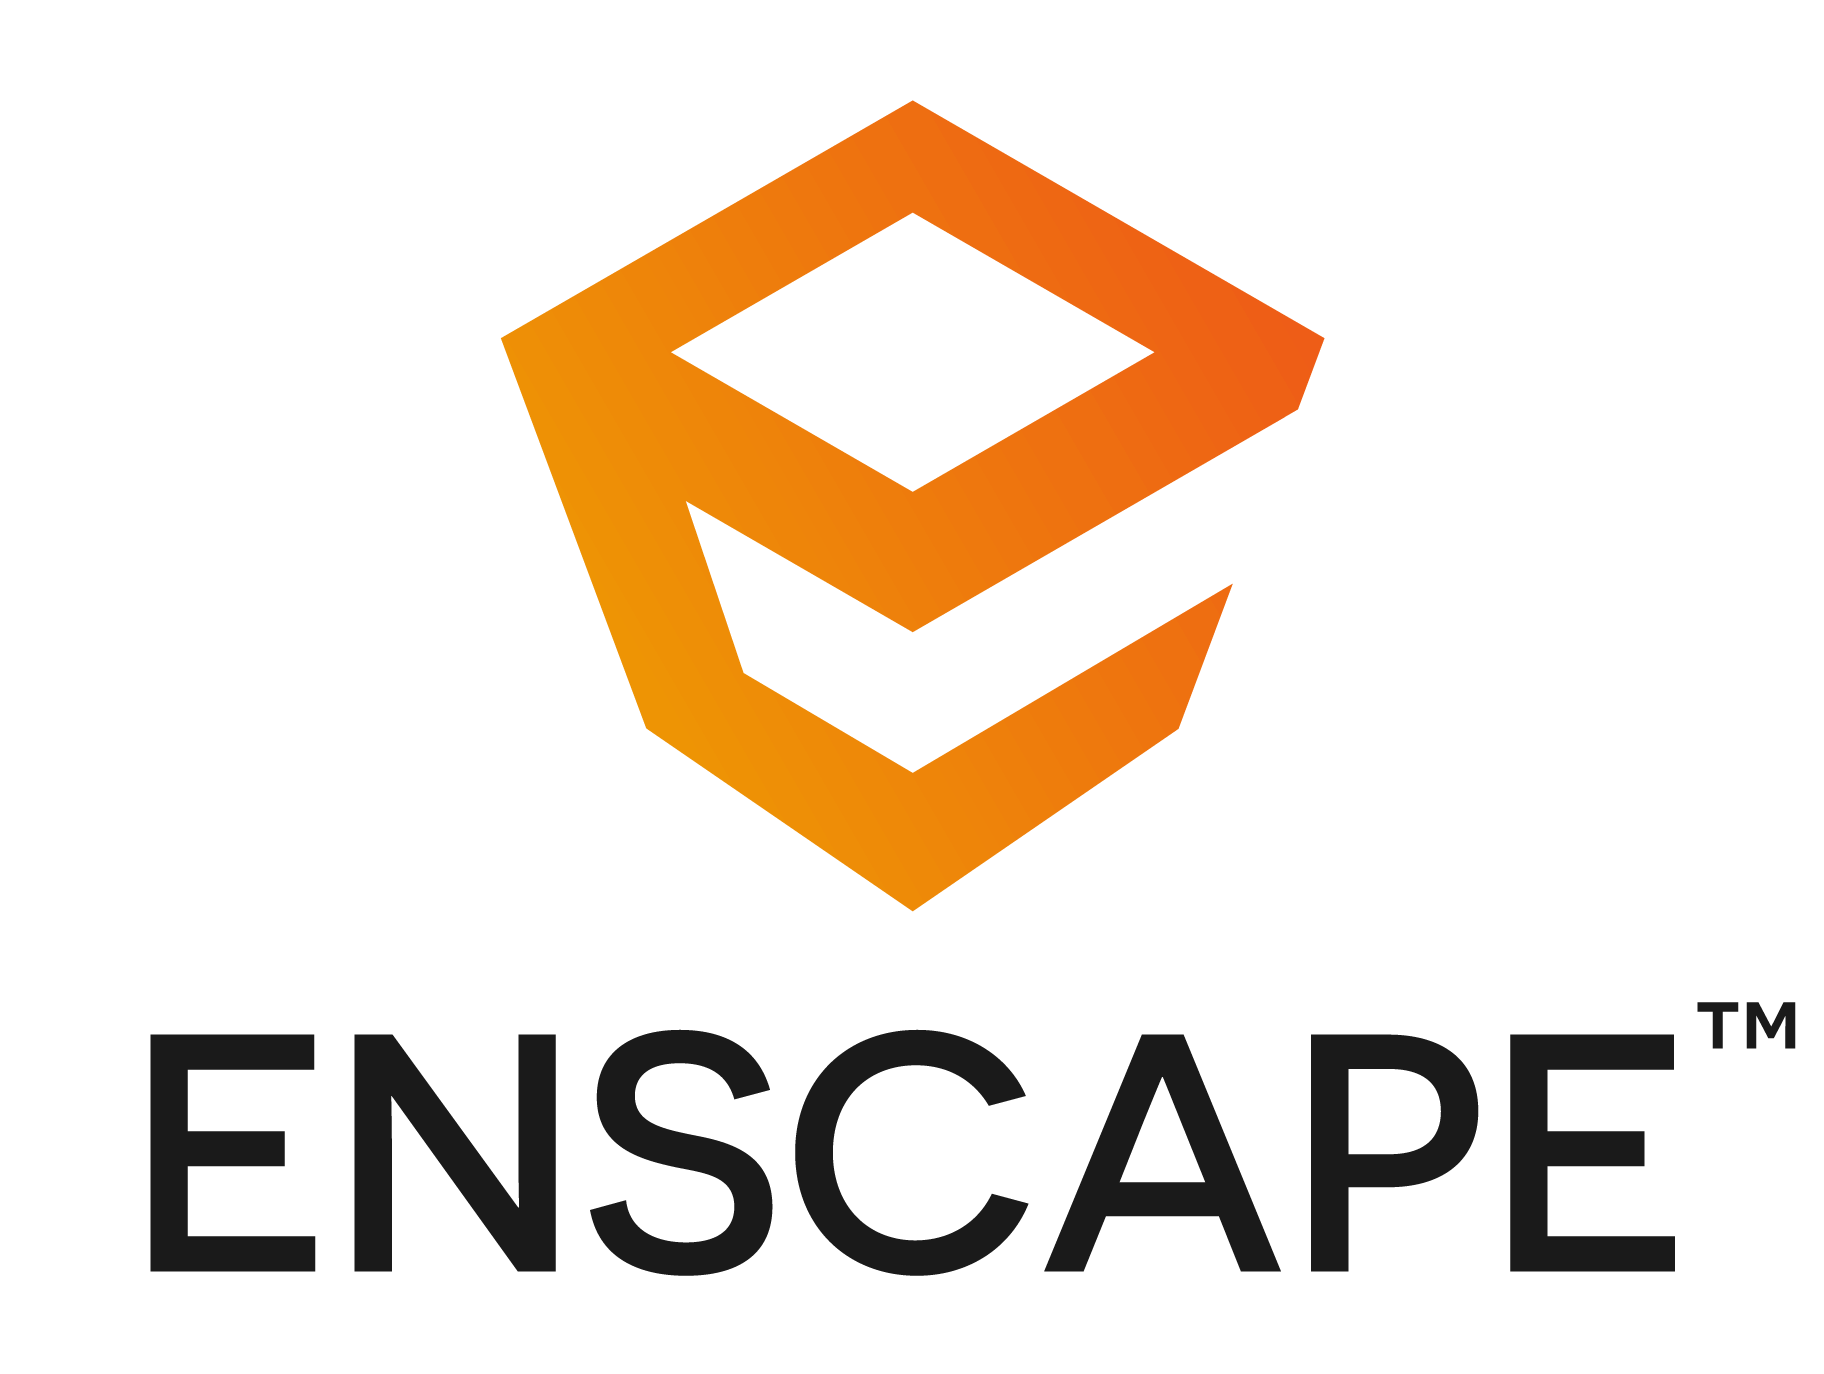 Enscape3D Crack + License Key Free Download [Full]